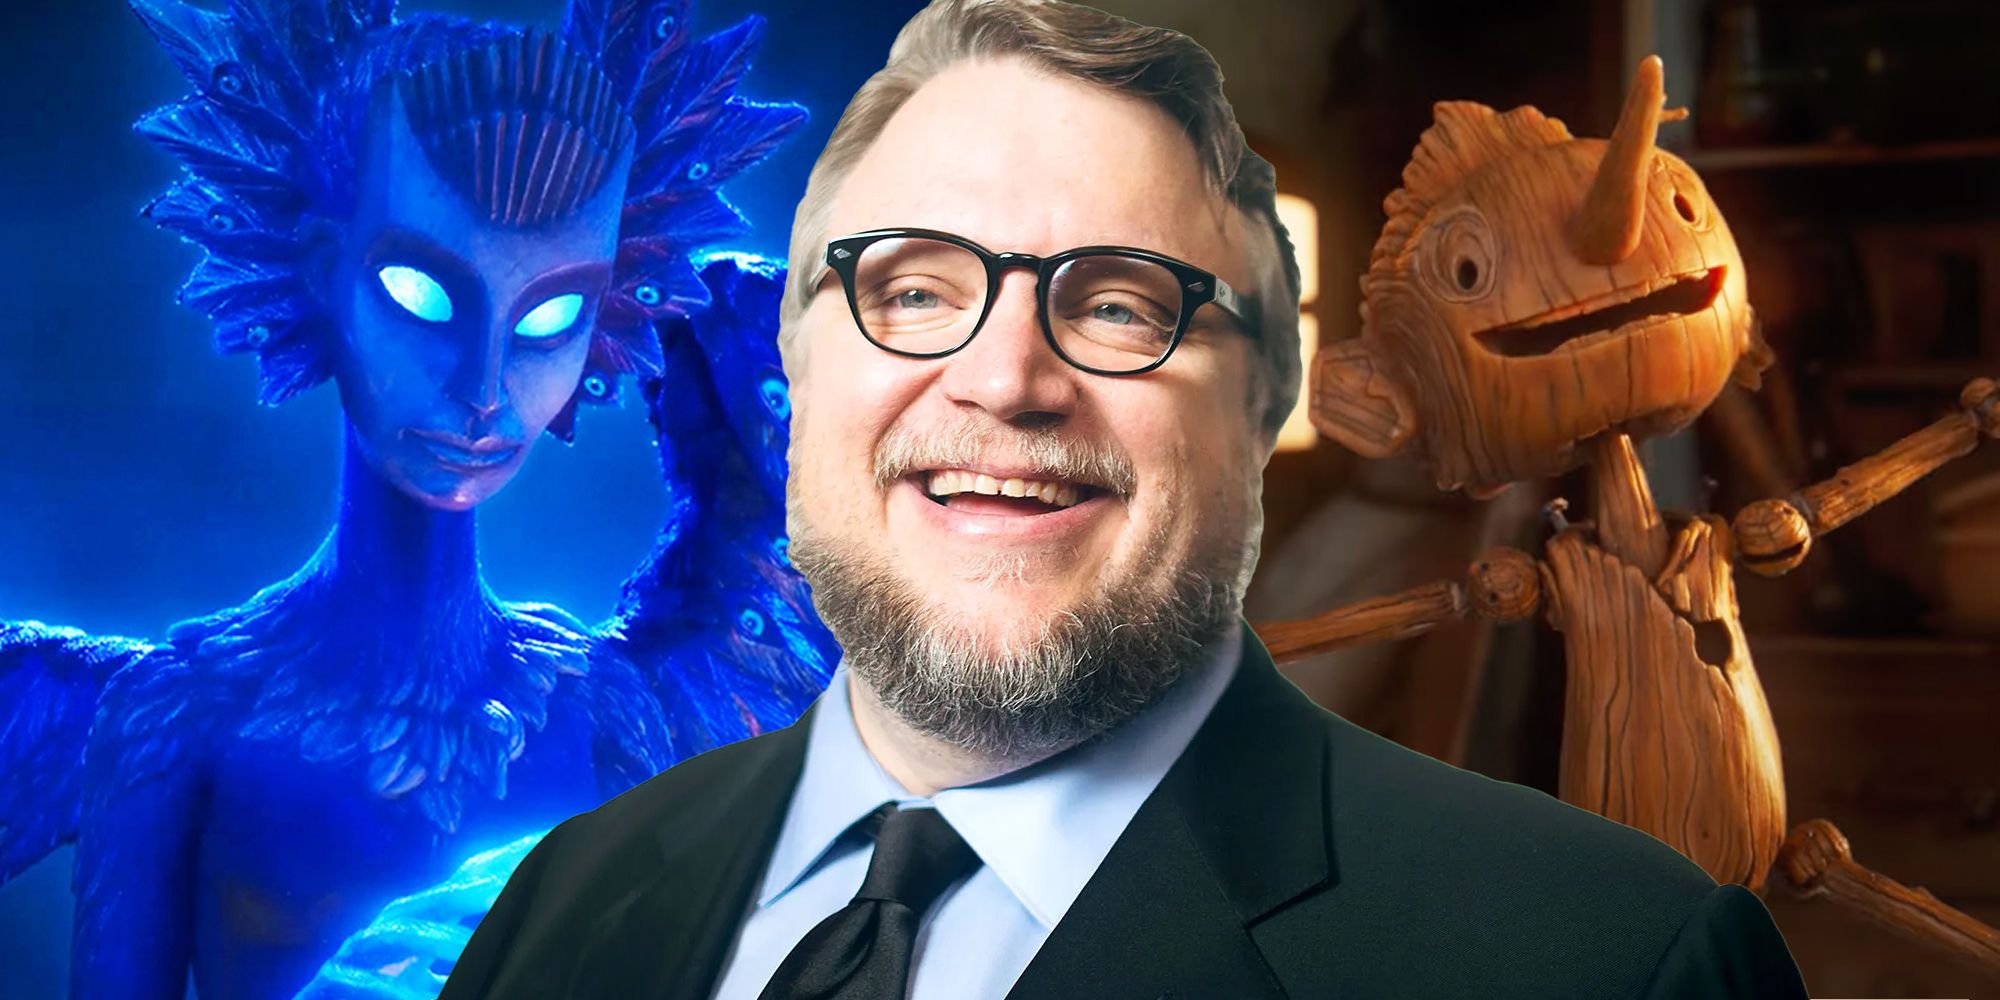 Guillermo del Toro, Pinocchio, and the Blue Fairy